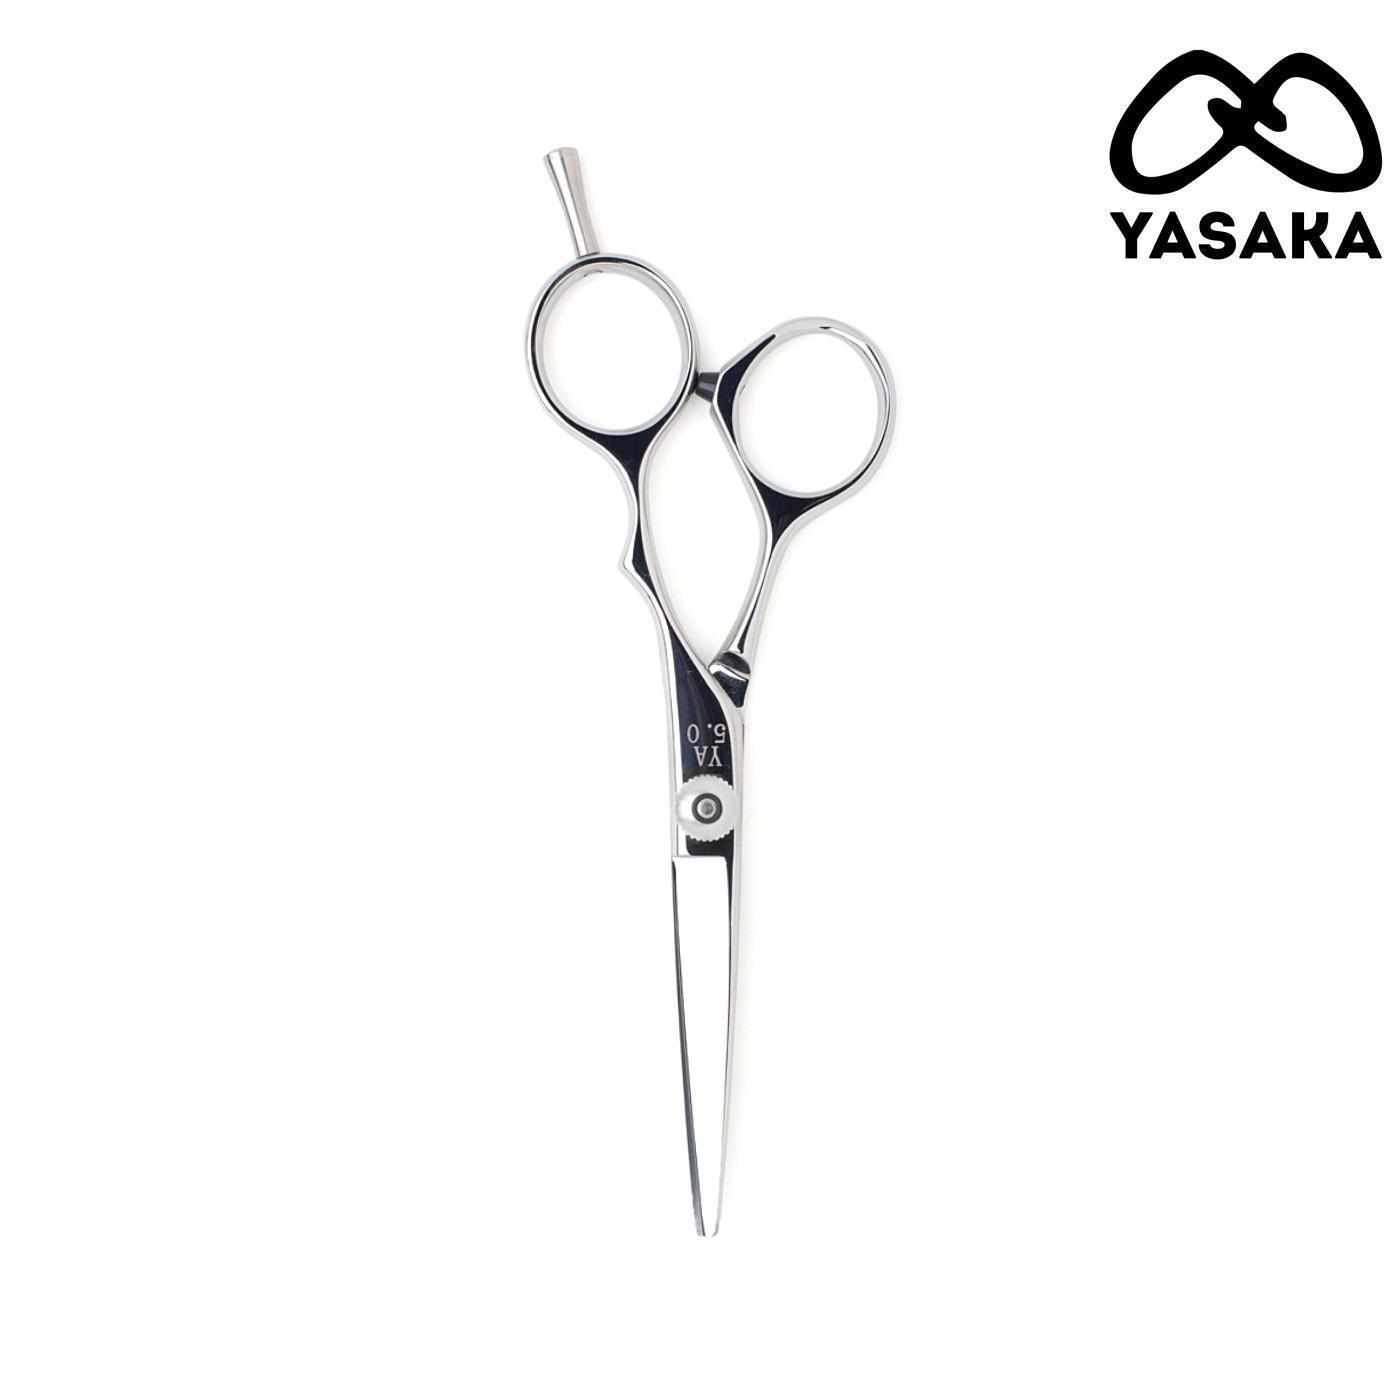 Yasaka YA Hair Cutting Scissors